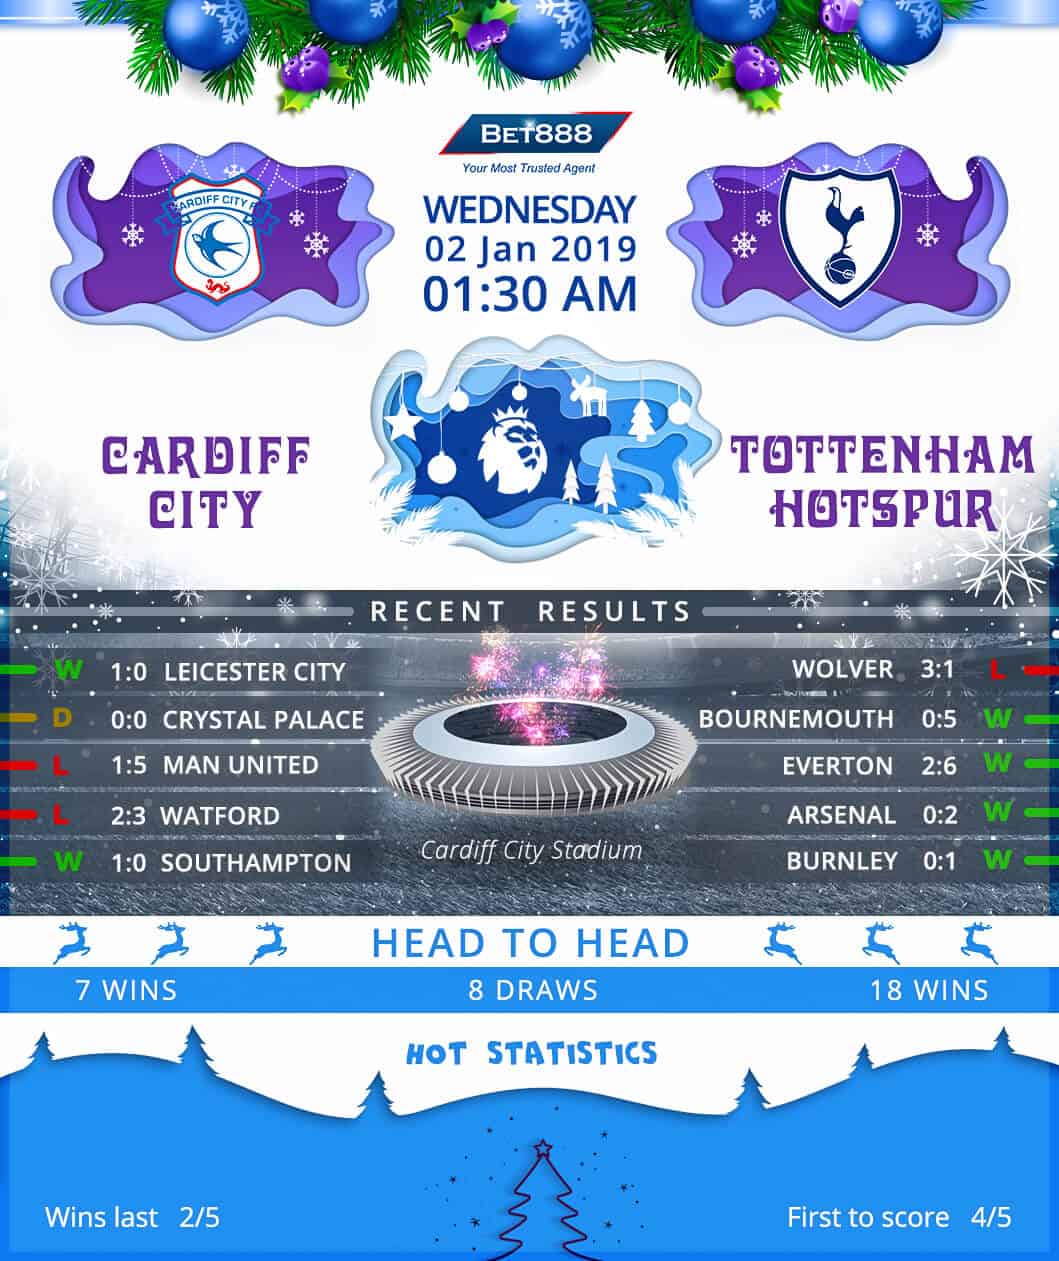 Cardiff City vs Tottenham Hotspur 02/01/19